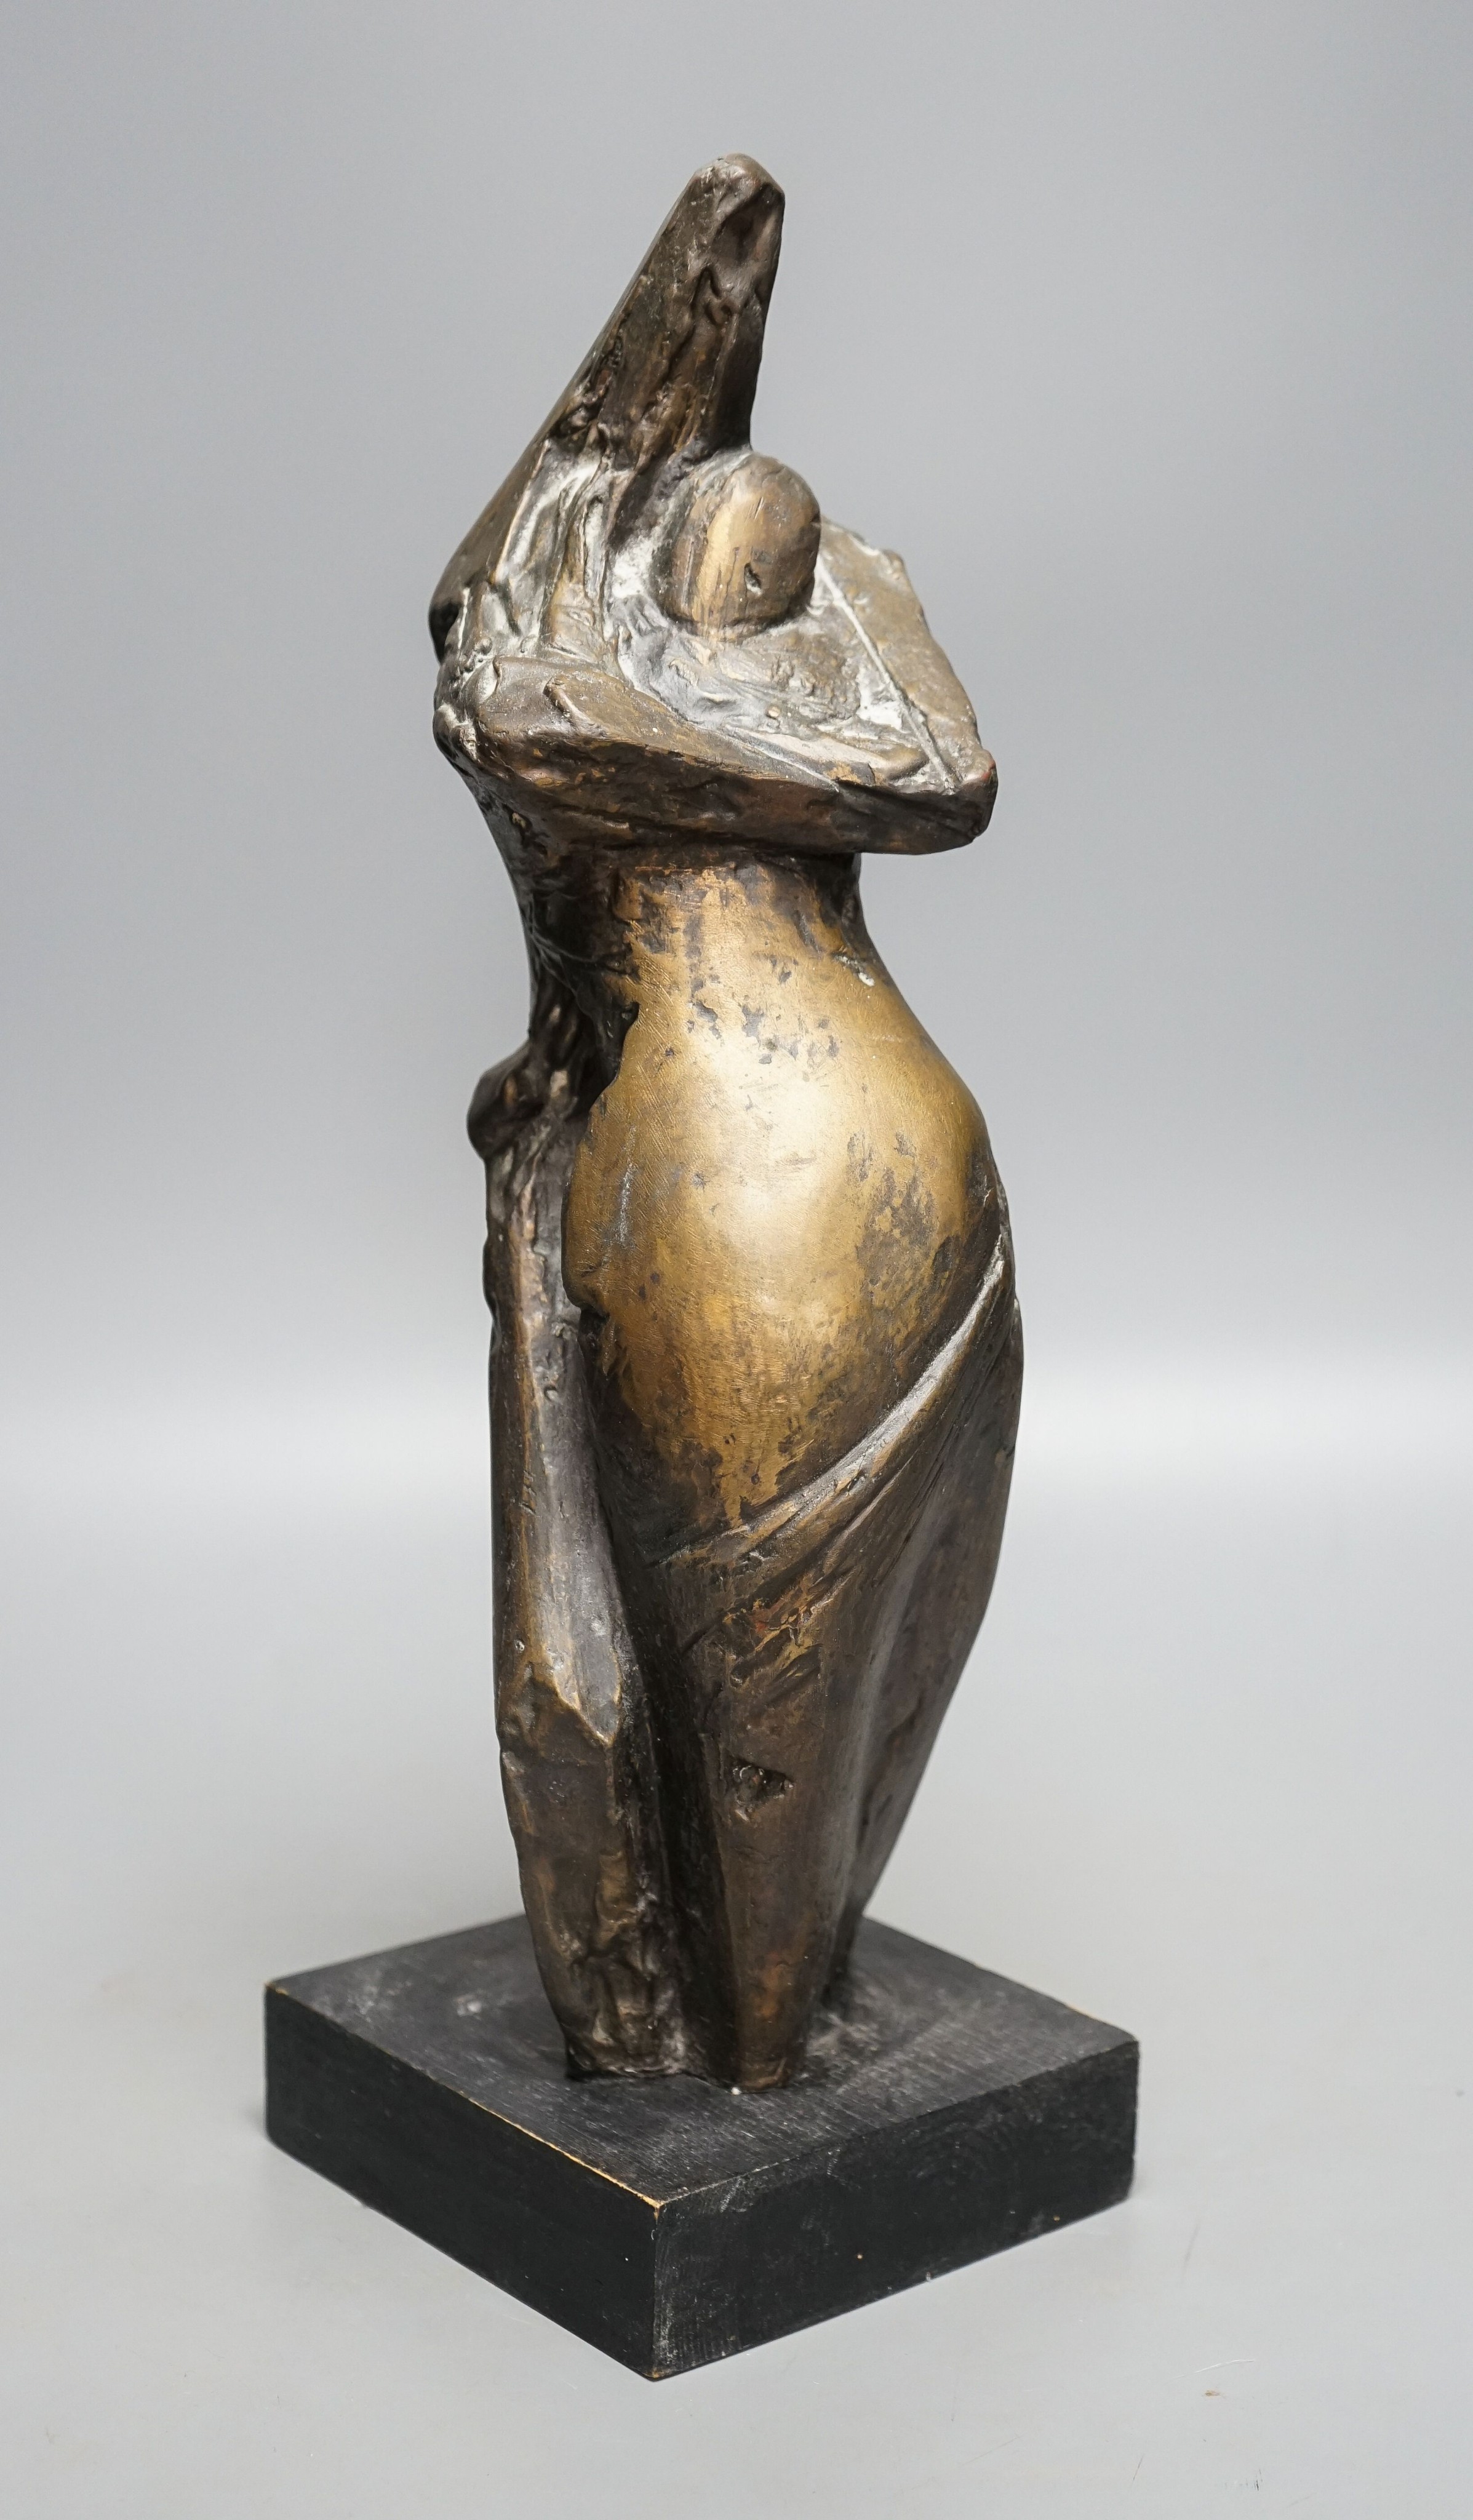 Tissa?, an abstract bronze figure 40cm